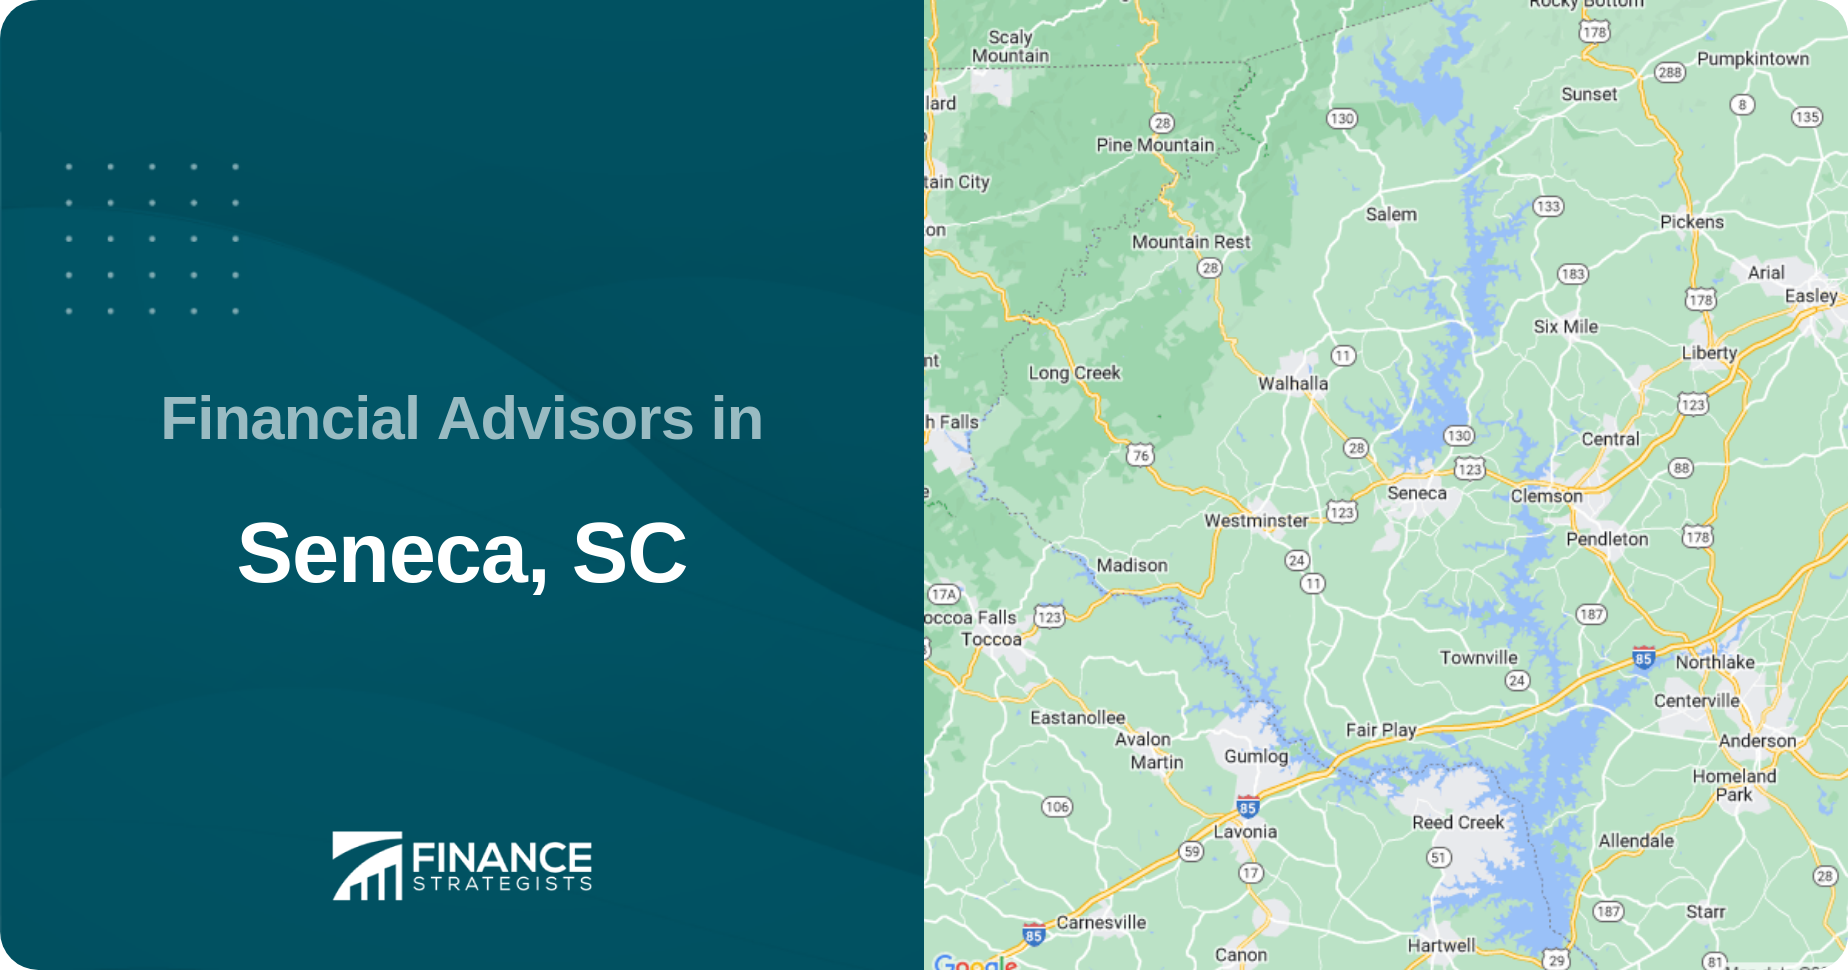 Financial Advisors in Seneca, SC